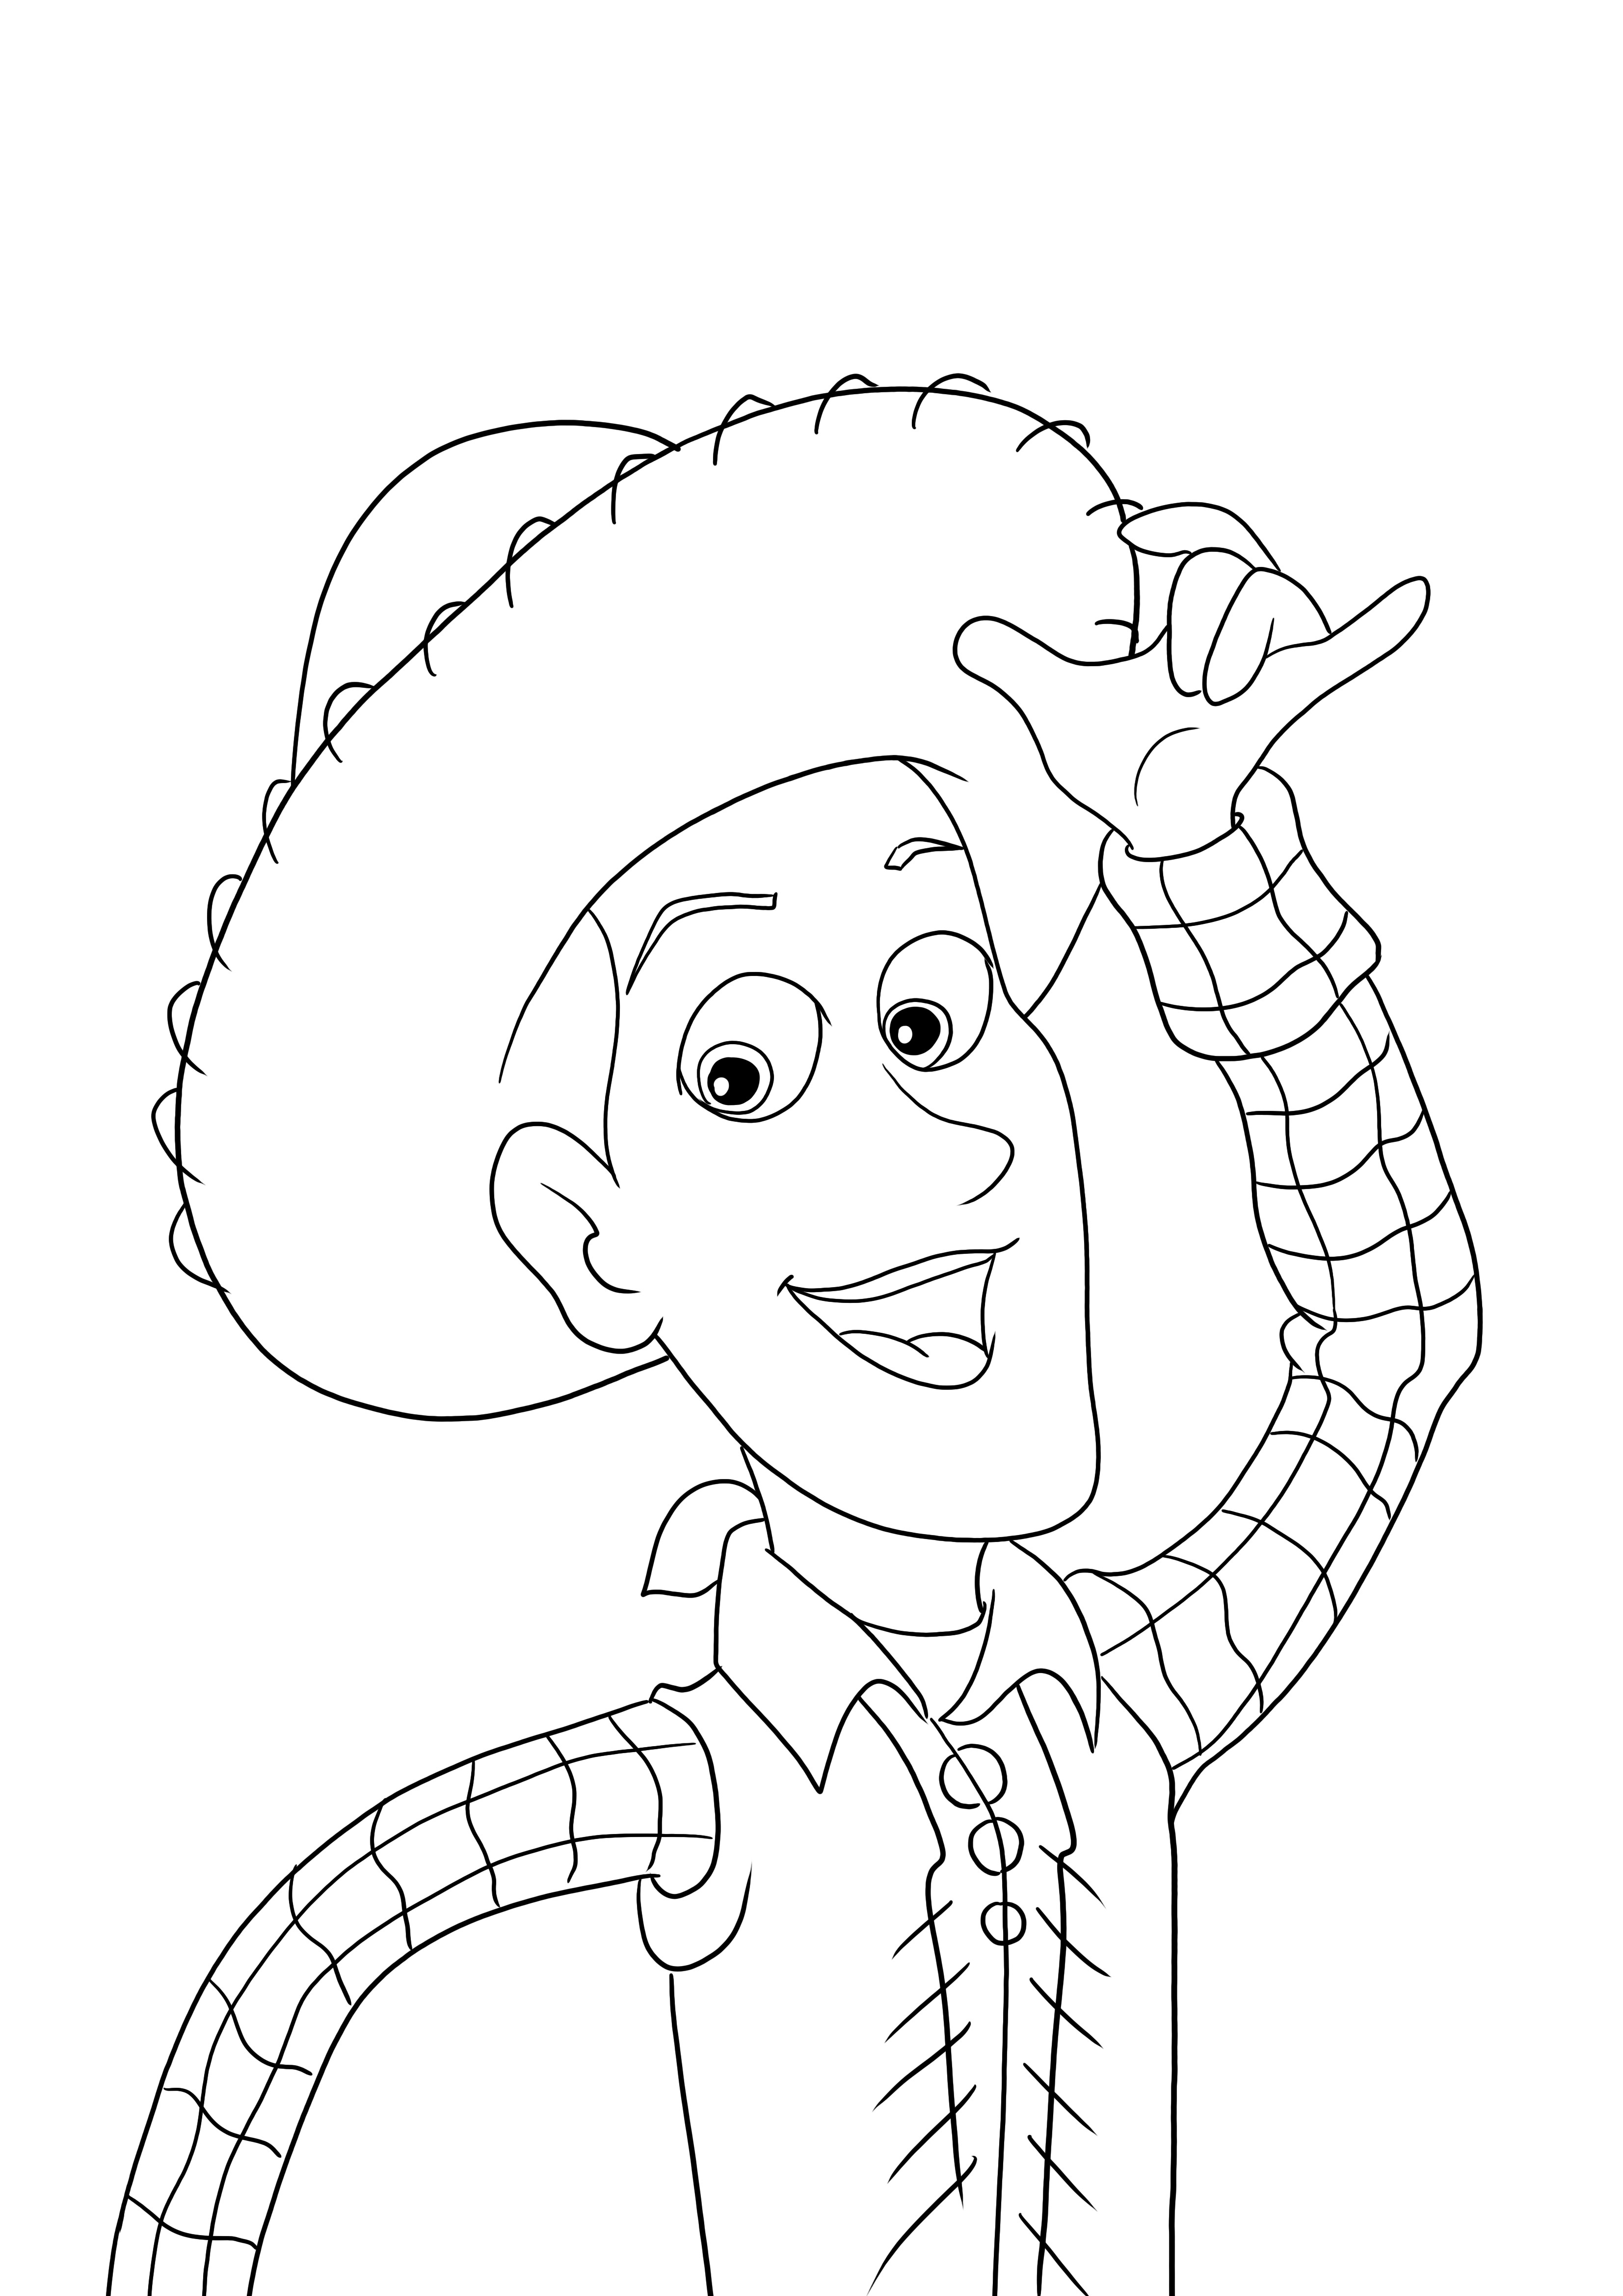 Woody-personage uit de film Toy Story om gratis en in kleur te downloaden of af te drukken kleurplaat